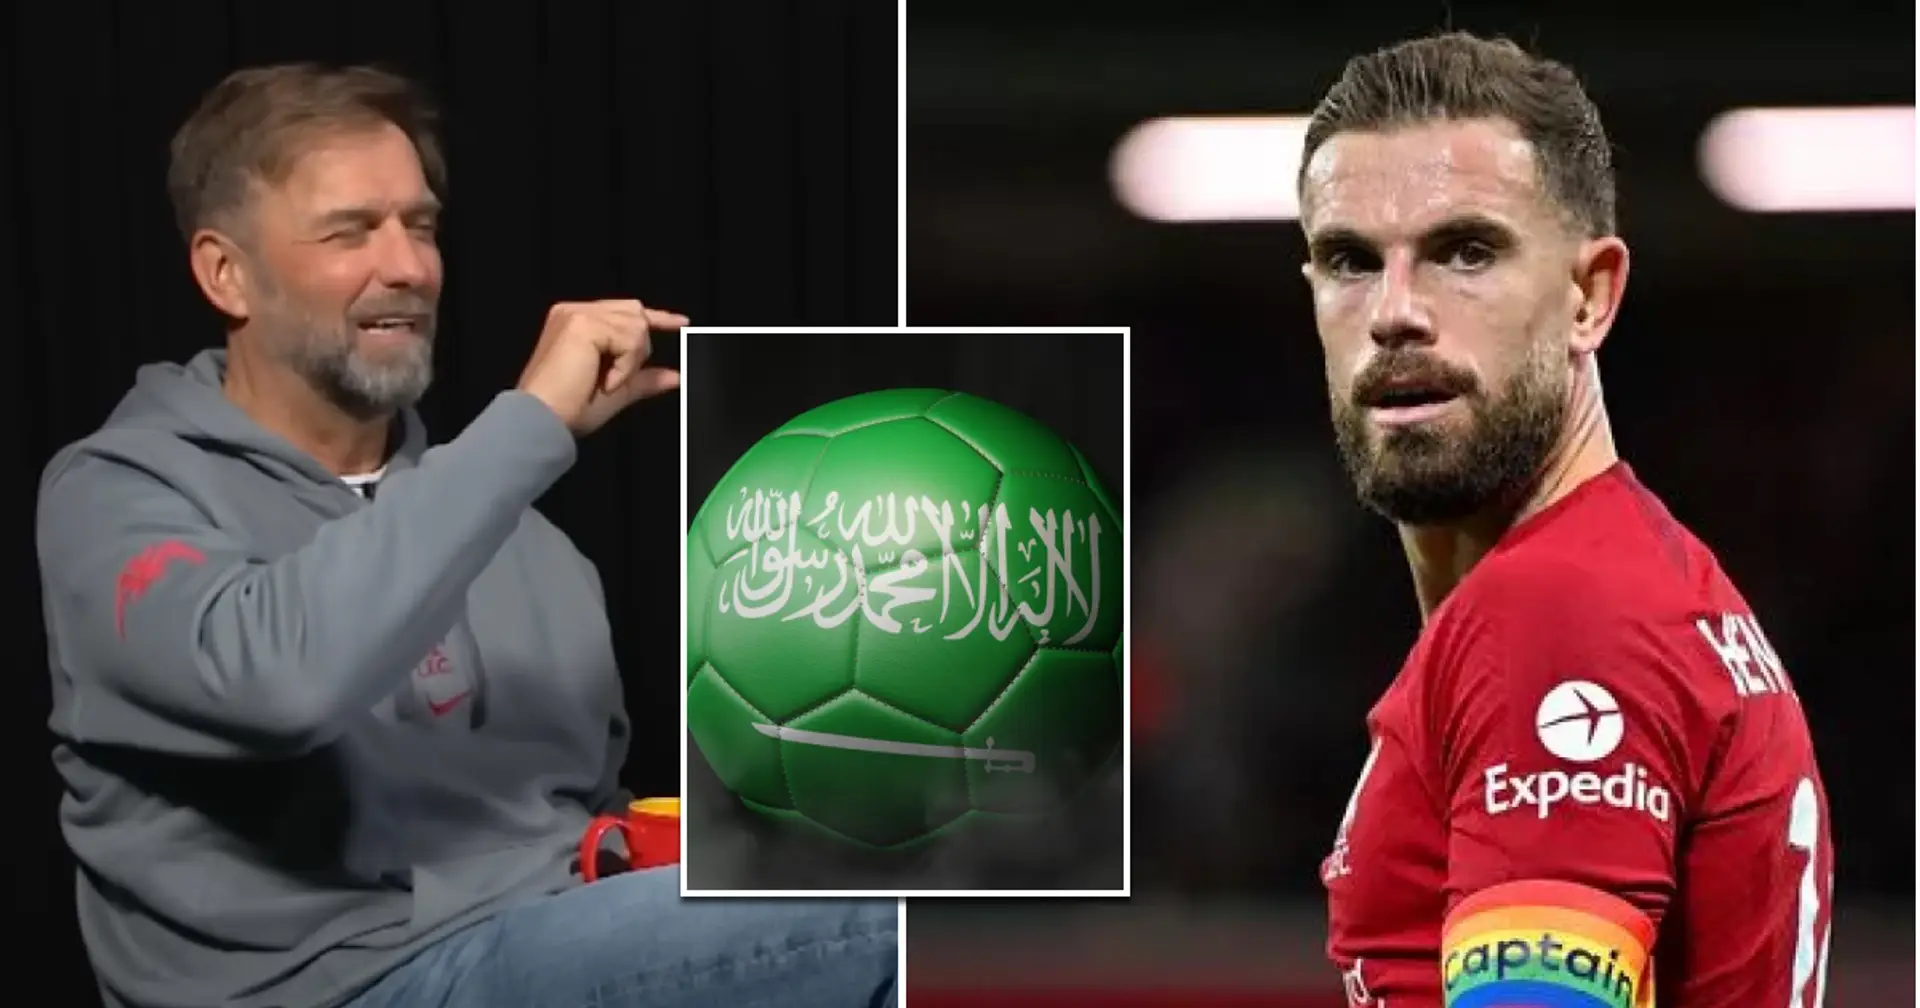 "Faire semblant d'être dégoûté au lieu de le rejeter": Liverpool accusé de vertu ostentatoire à cause du transfert de ses deux milieux de terrain vers l'Arabie Saoudite